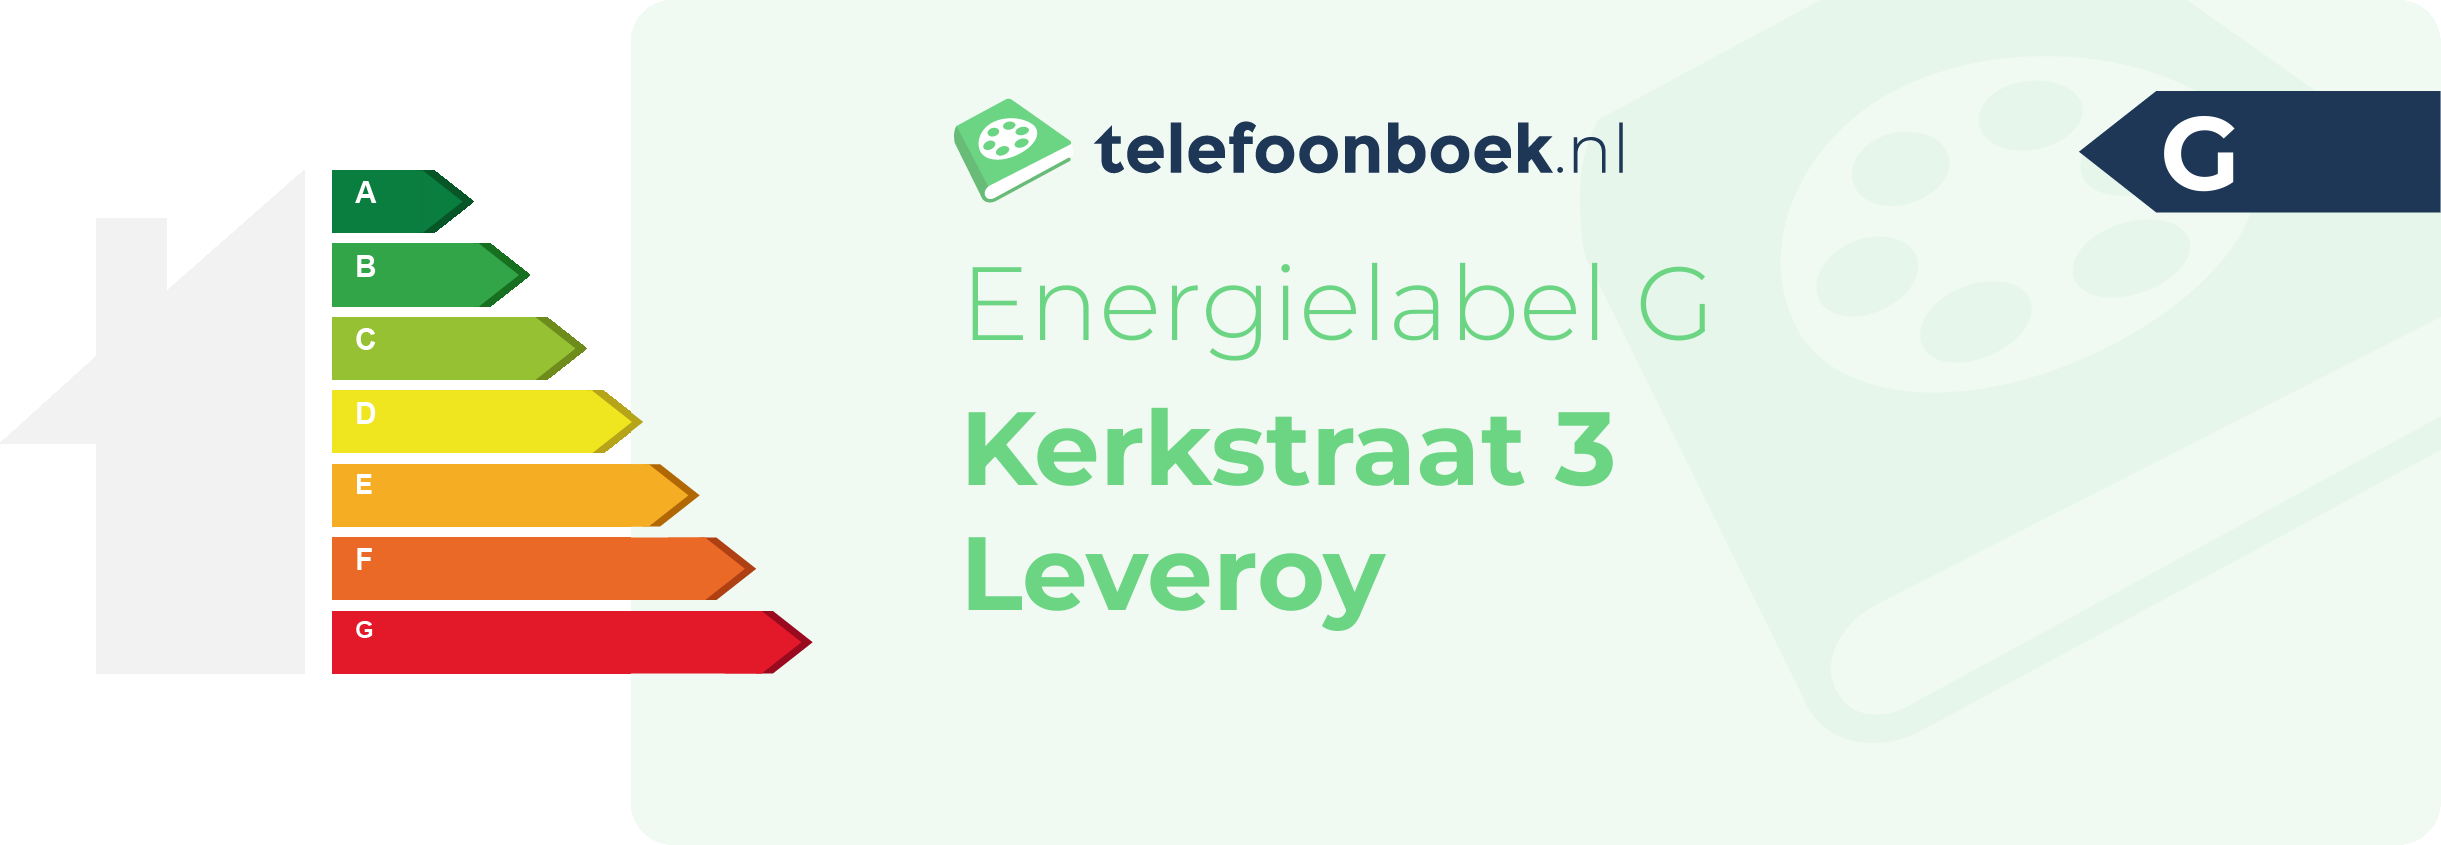 Energielabel Kerkstraat 3 Leveroy